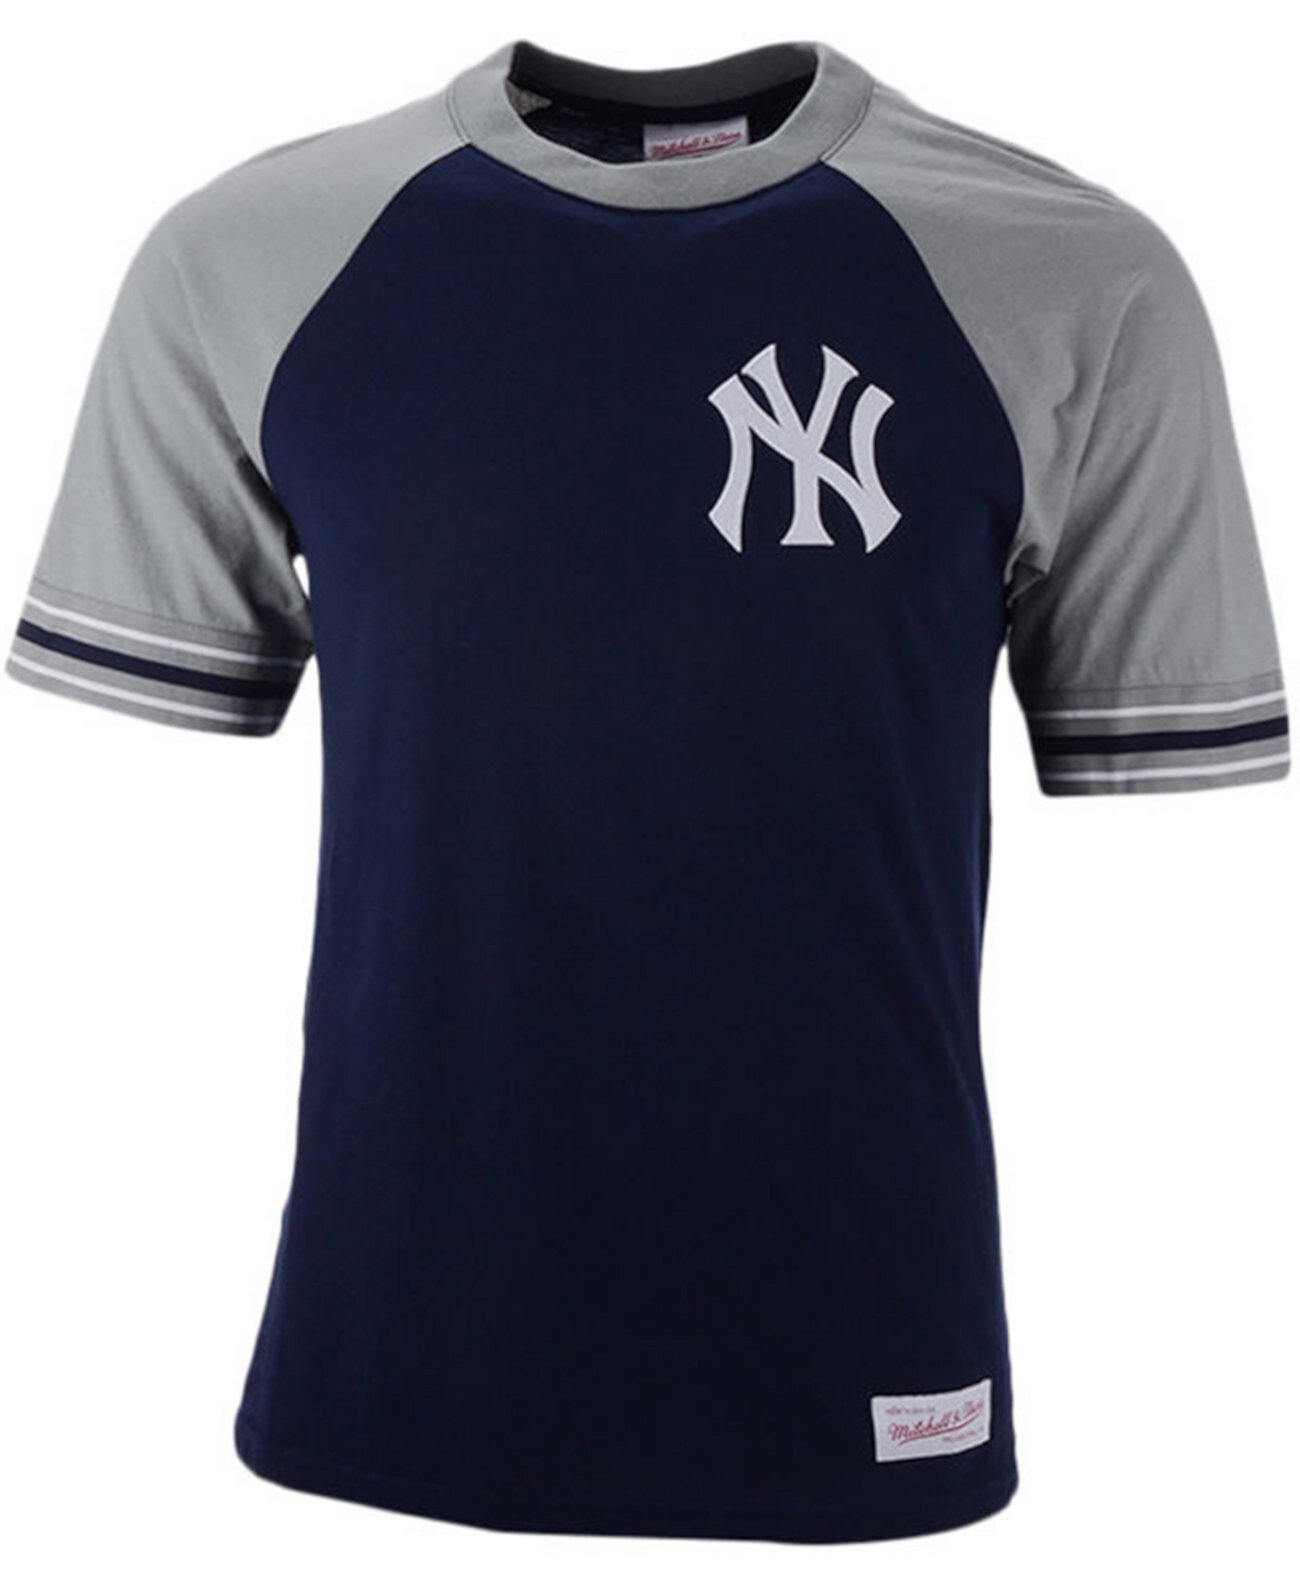 Мужская футболка капитана команды New York Yankees Mitchell & Ness